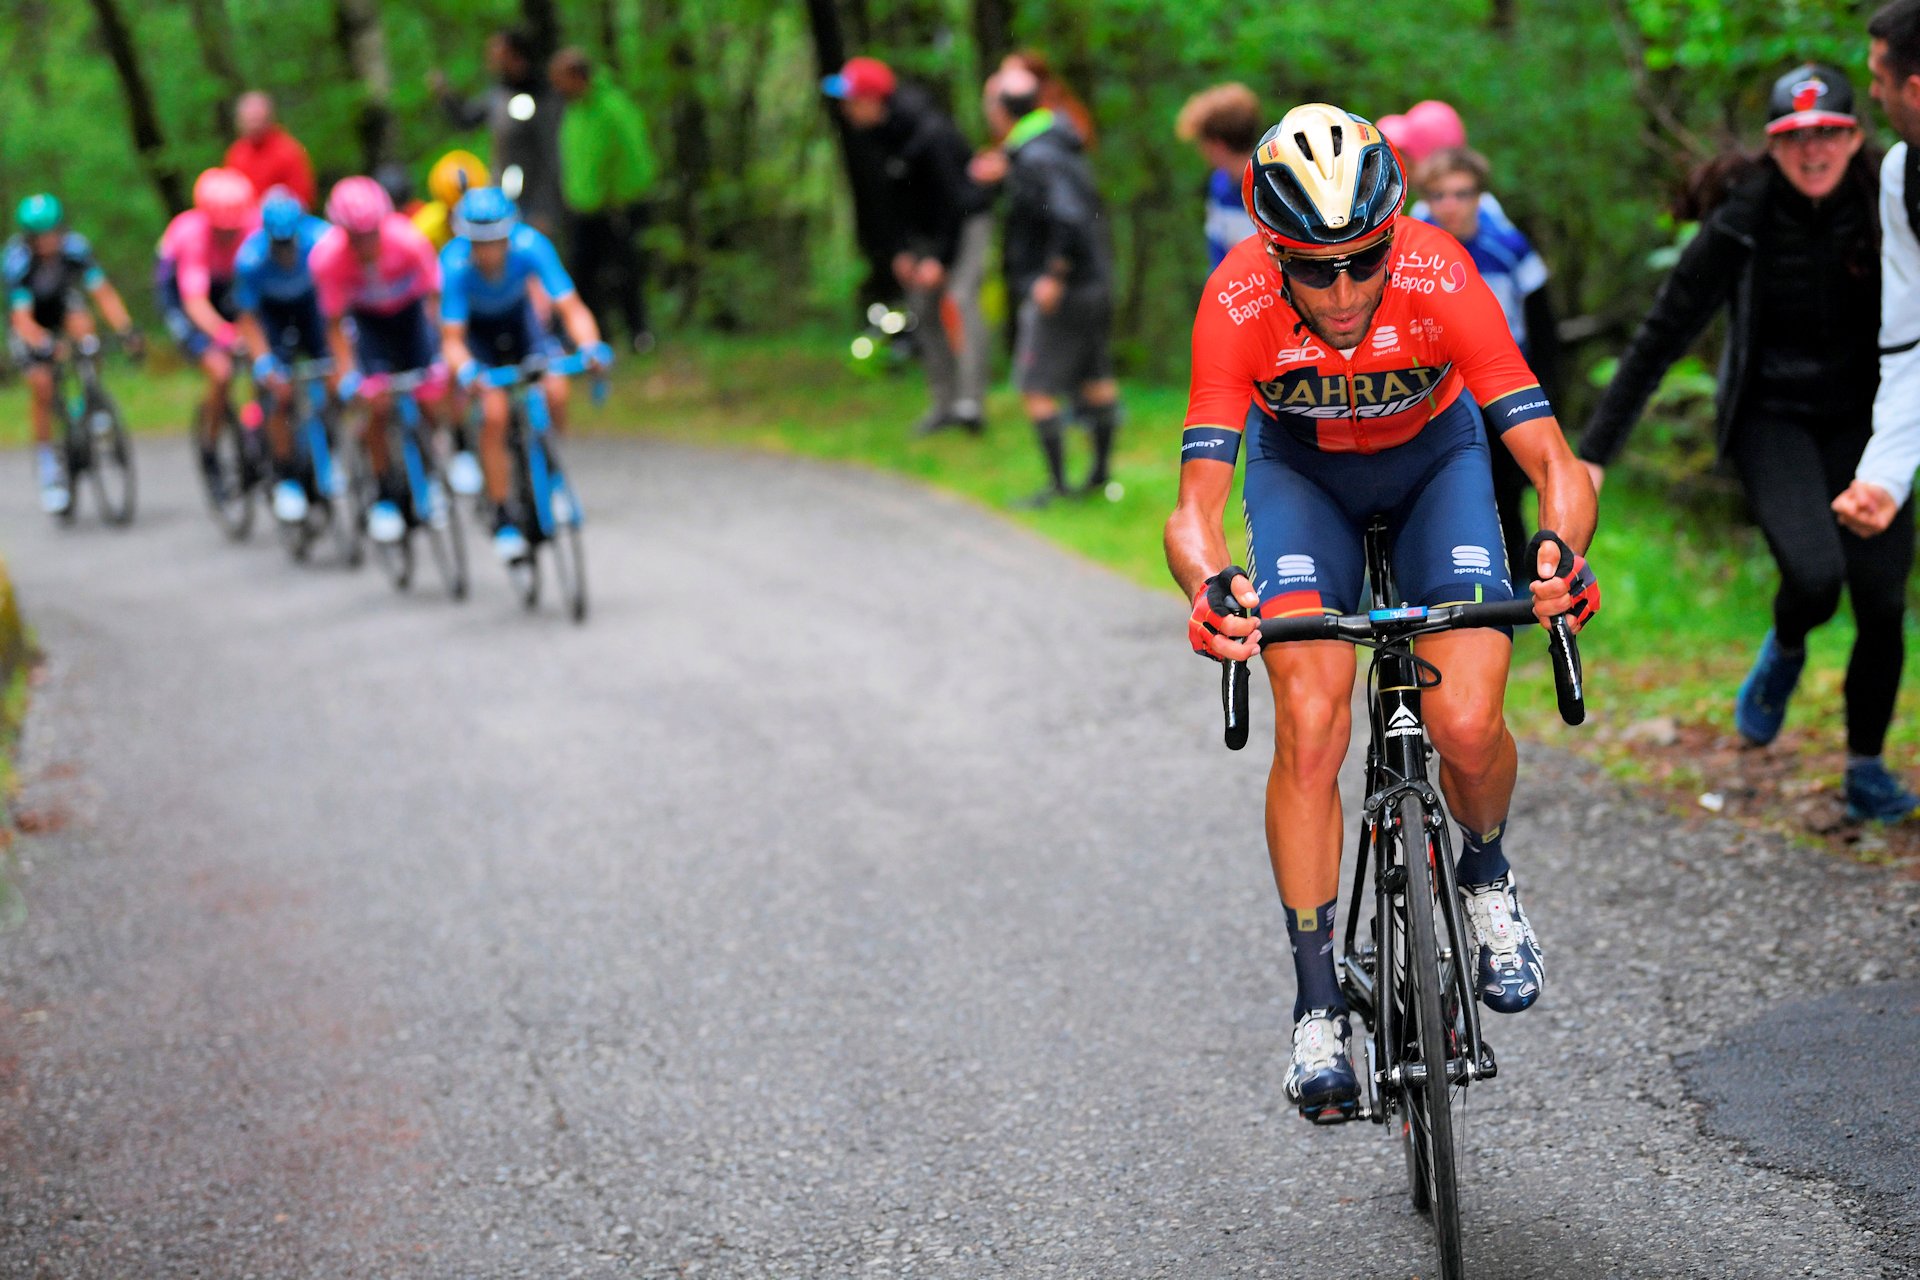 Giro d’Italia 2019. Nibali już przed Roglicem, Carapaz na celowniku